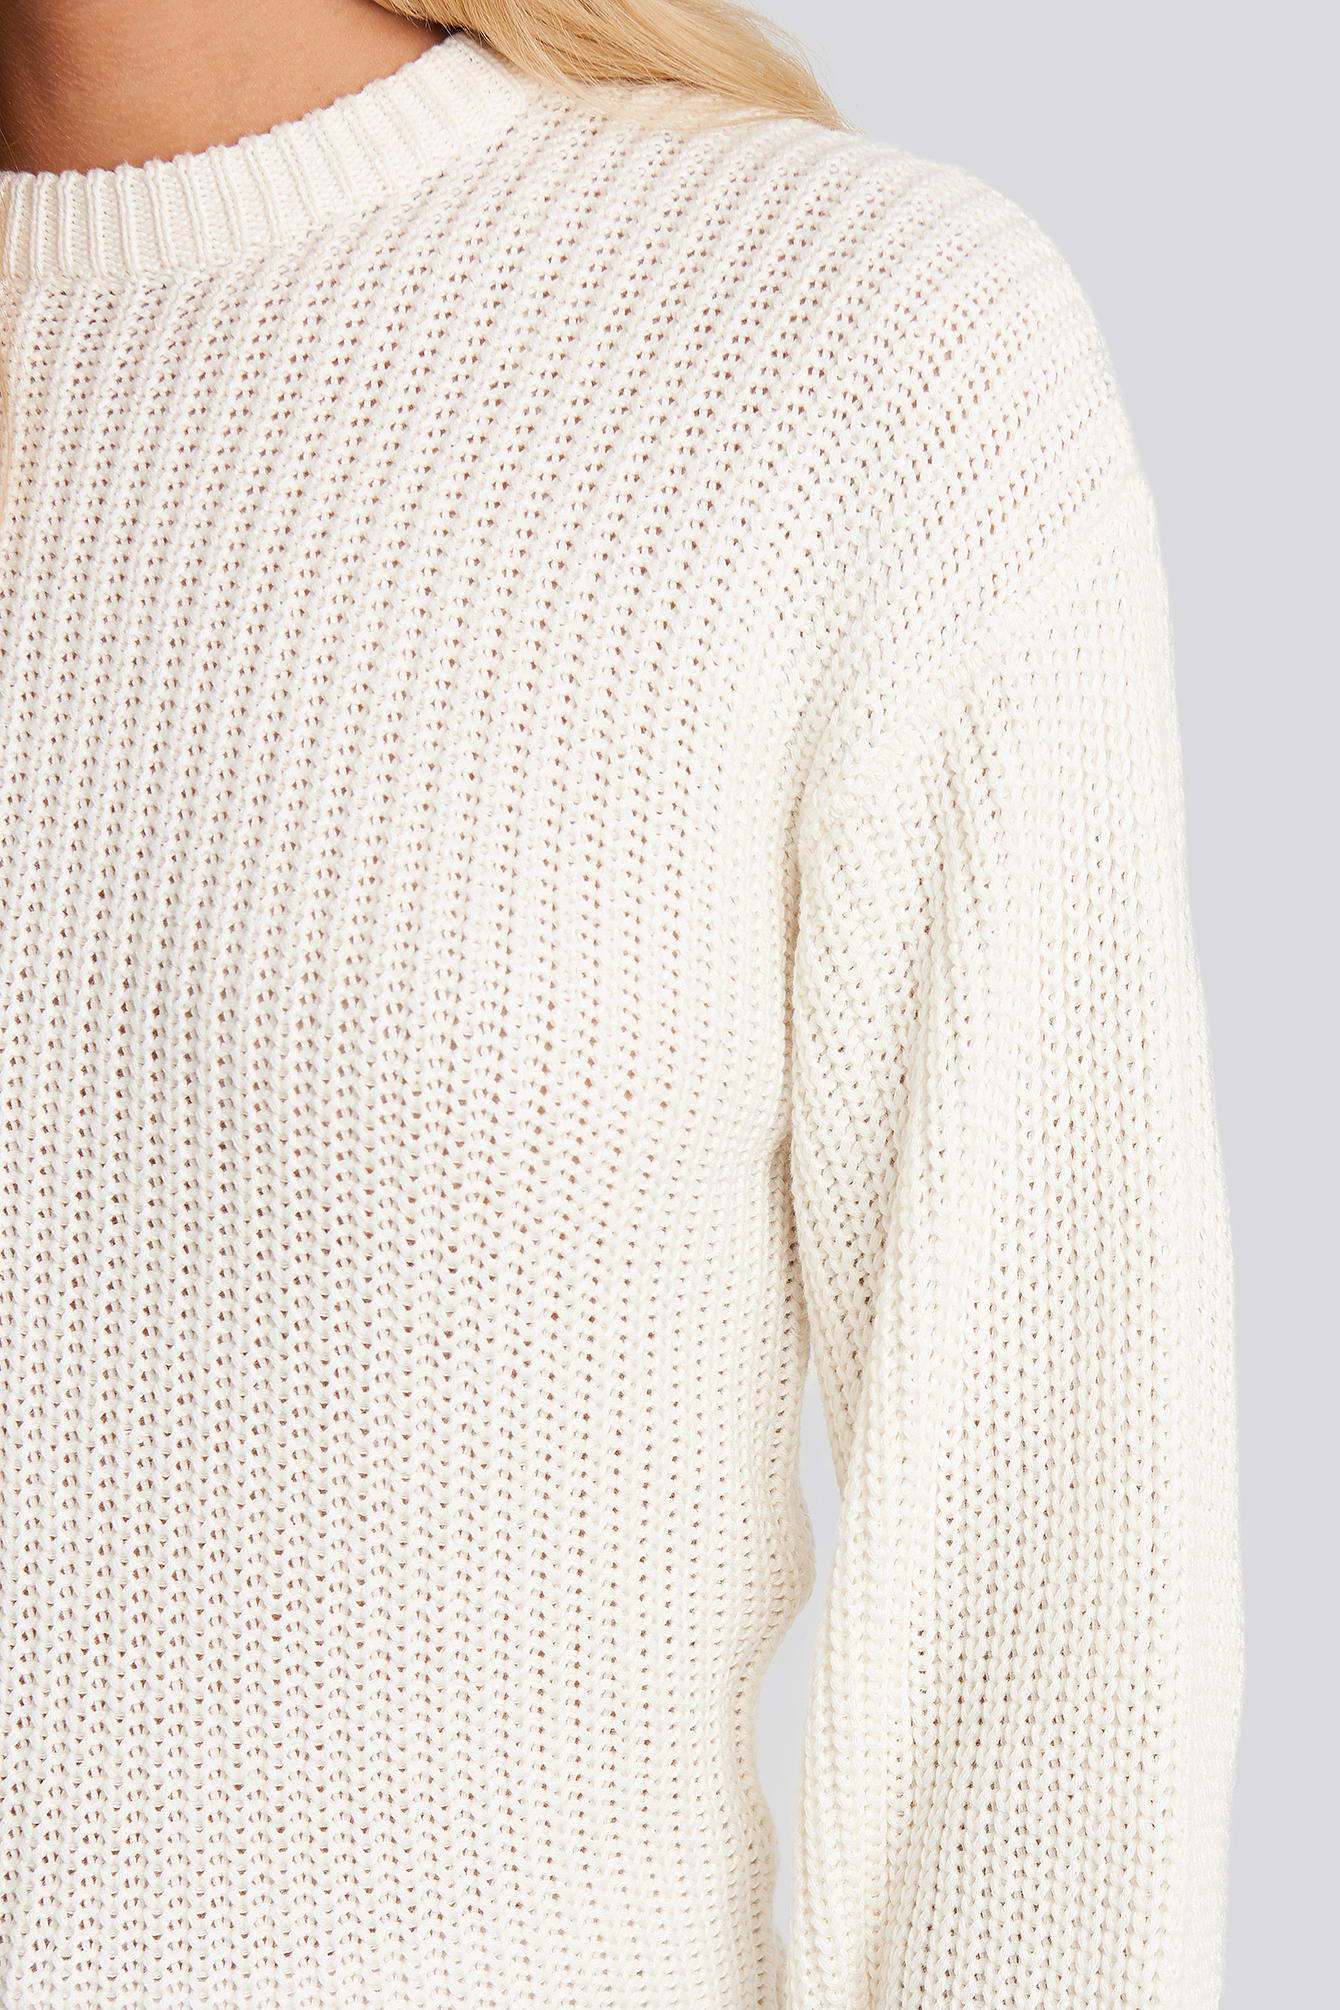 Dames Kleding voor voor Jassen NA-KD Katoen Dropped Shoulder Knitted Sweater in het Wit 